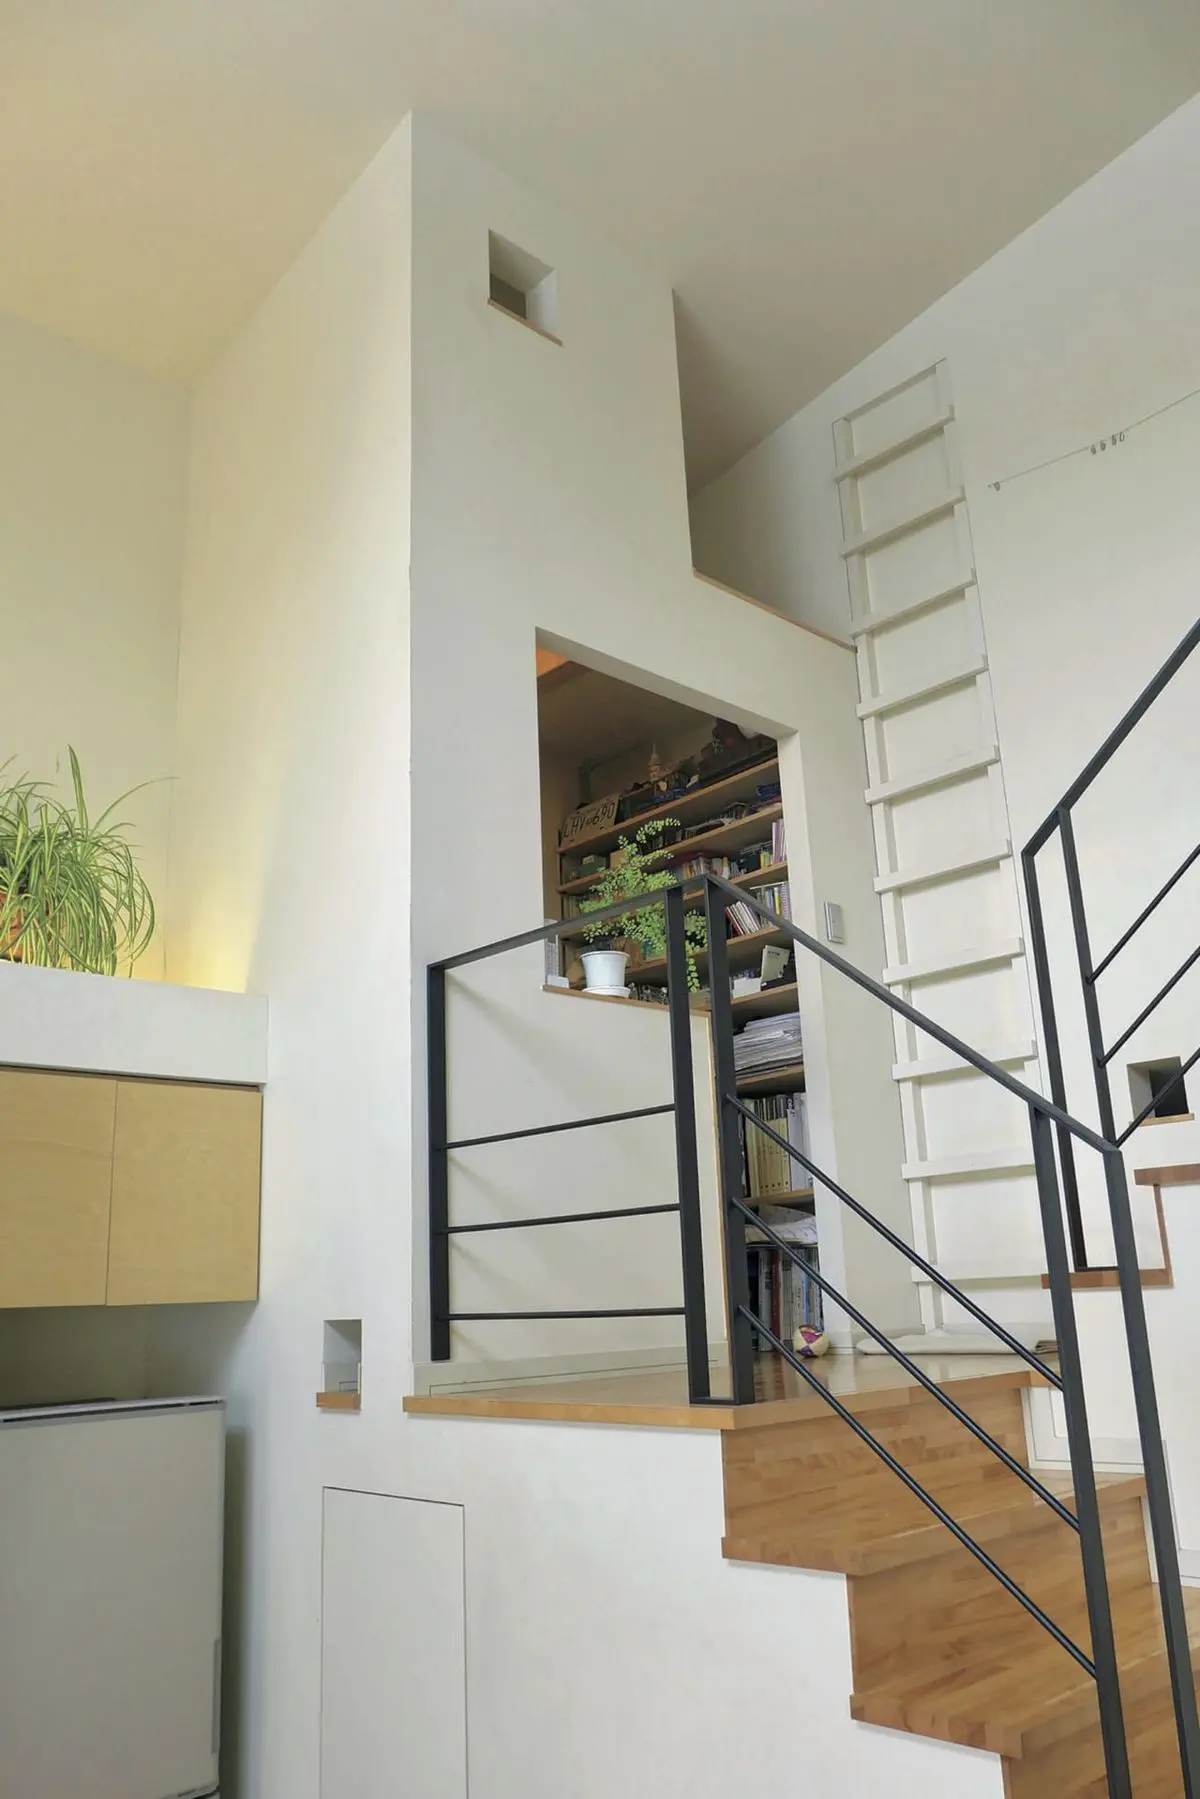 こもり感たっぷり 1階と2階に目が行き渡る 階段踊り場にある書斎 北海道 安藤邸 小さな秘密基地の造り方 男の隠れ家デジタル